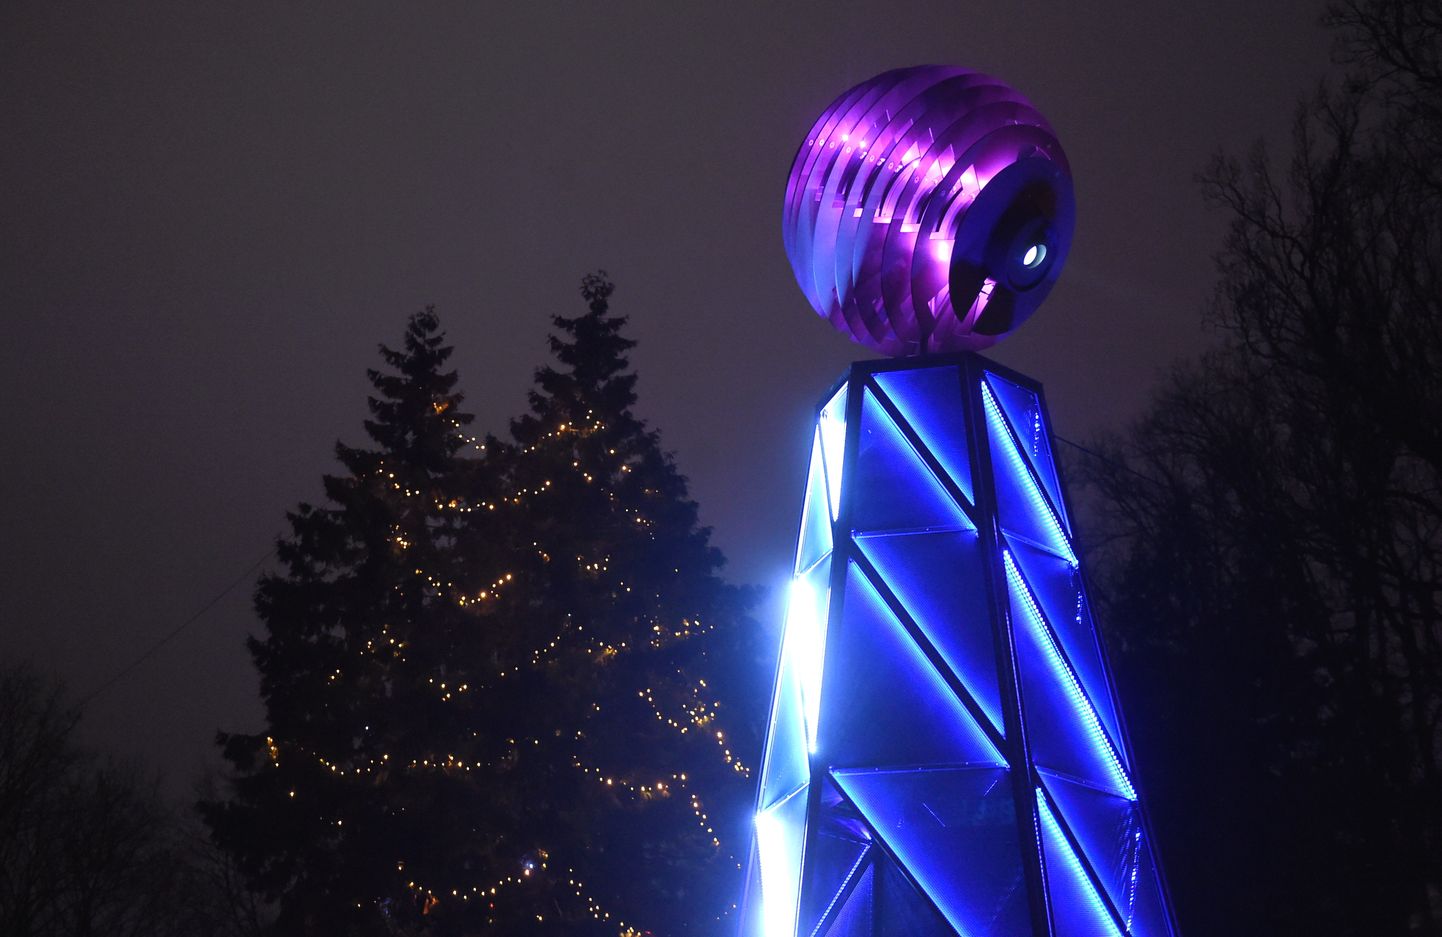 Vides objekts "Bāka" festivālā "Ziemassvētku egļu ceļš" Kronvalda parkā.